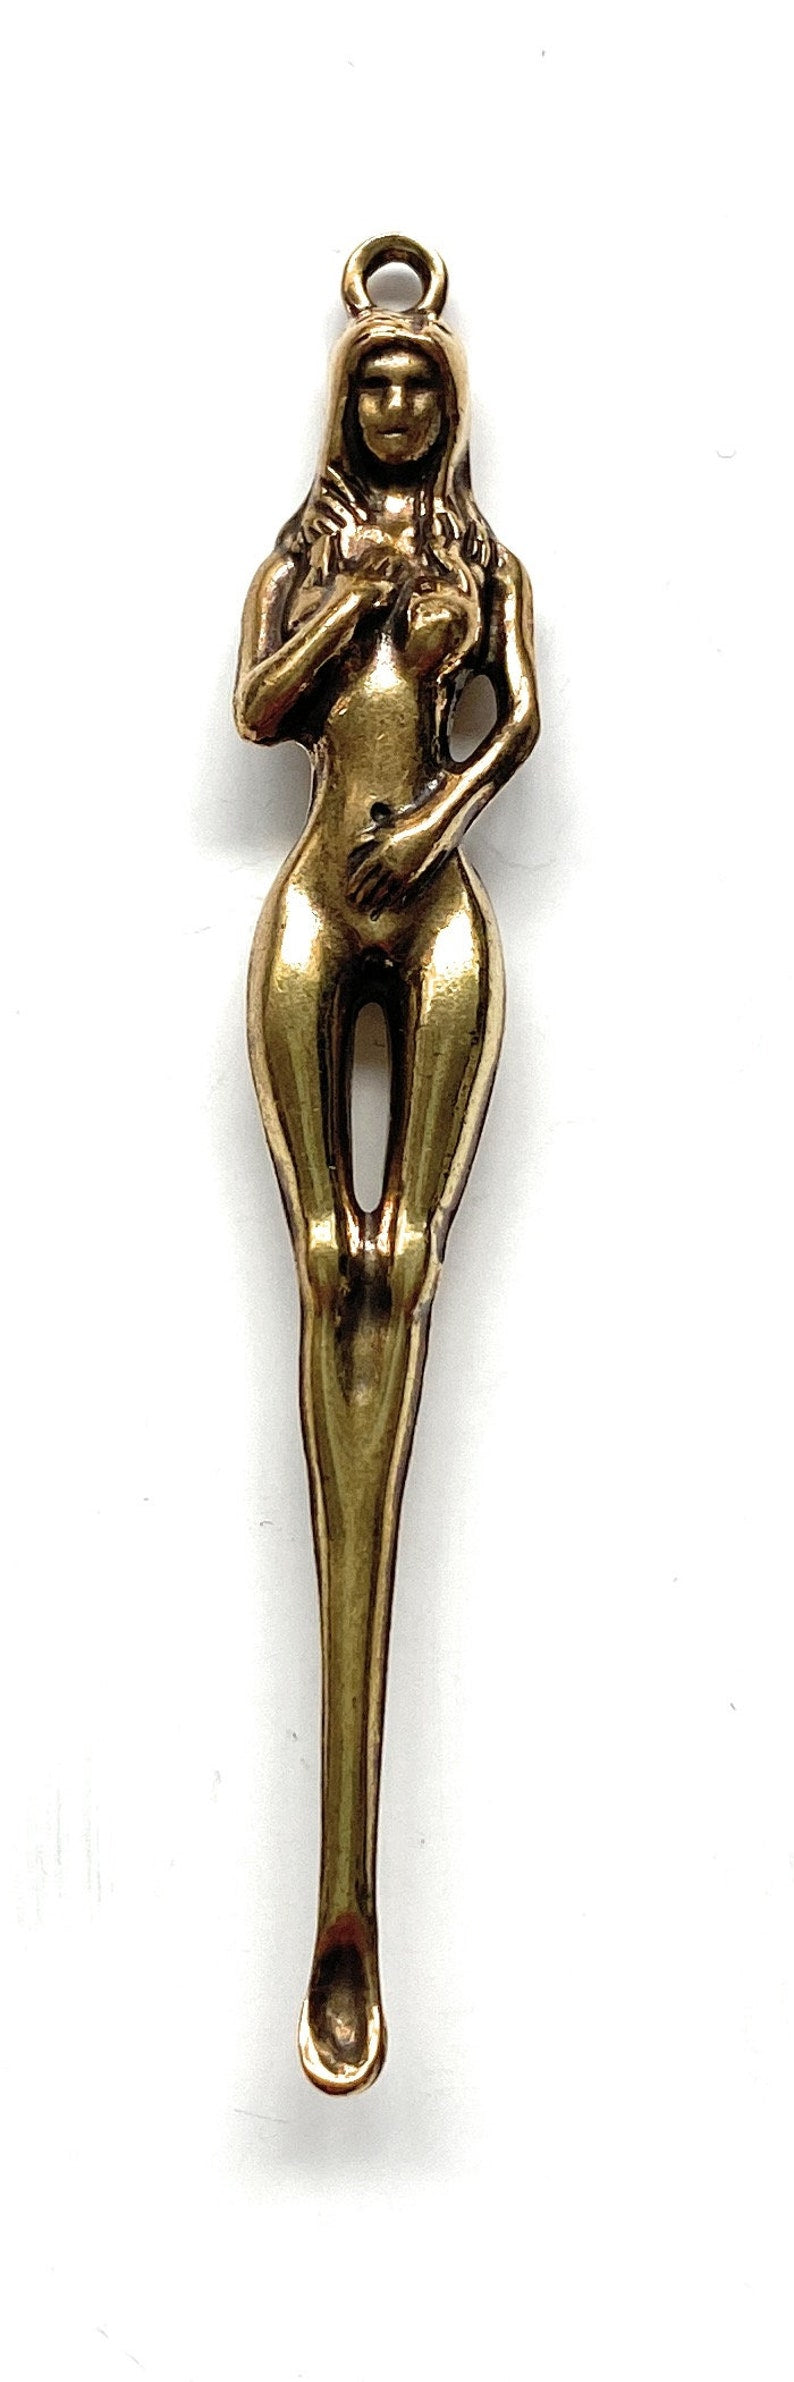 Mini spoon in women's shape (approx. 78mm) Charm Sniffer Snorter Snuff Powder Spoon Smoking Snuff Women Silhouette Spoon Brass